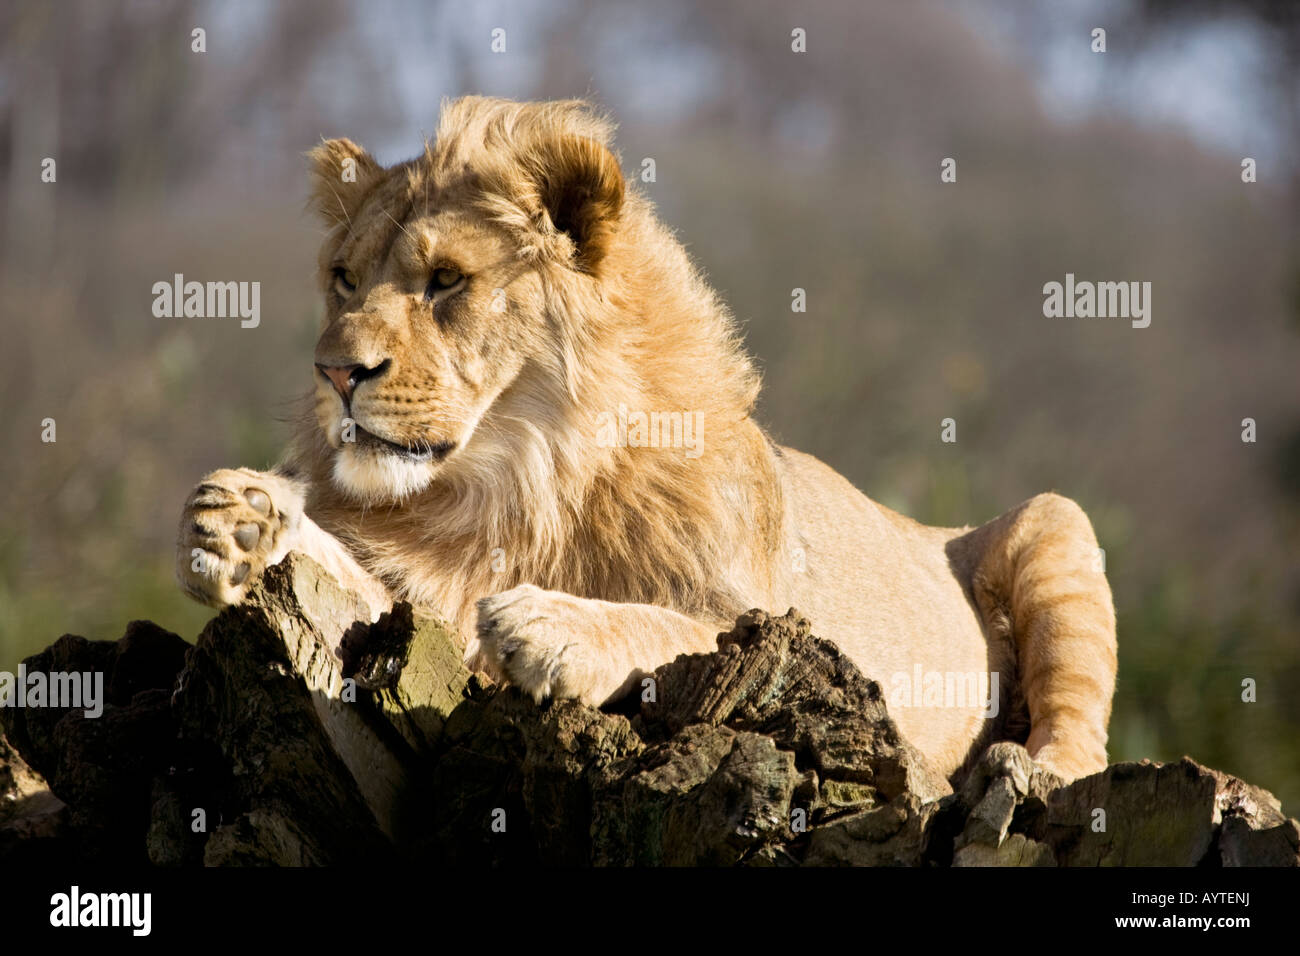 Mane lion sitting,England,UK Stock Photo